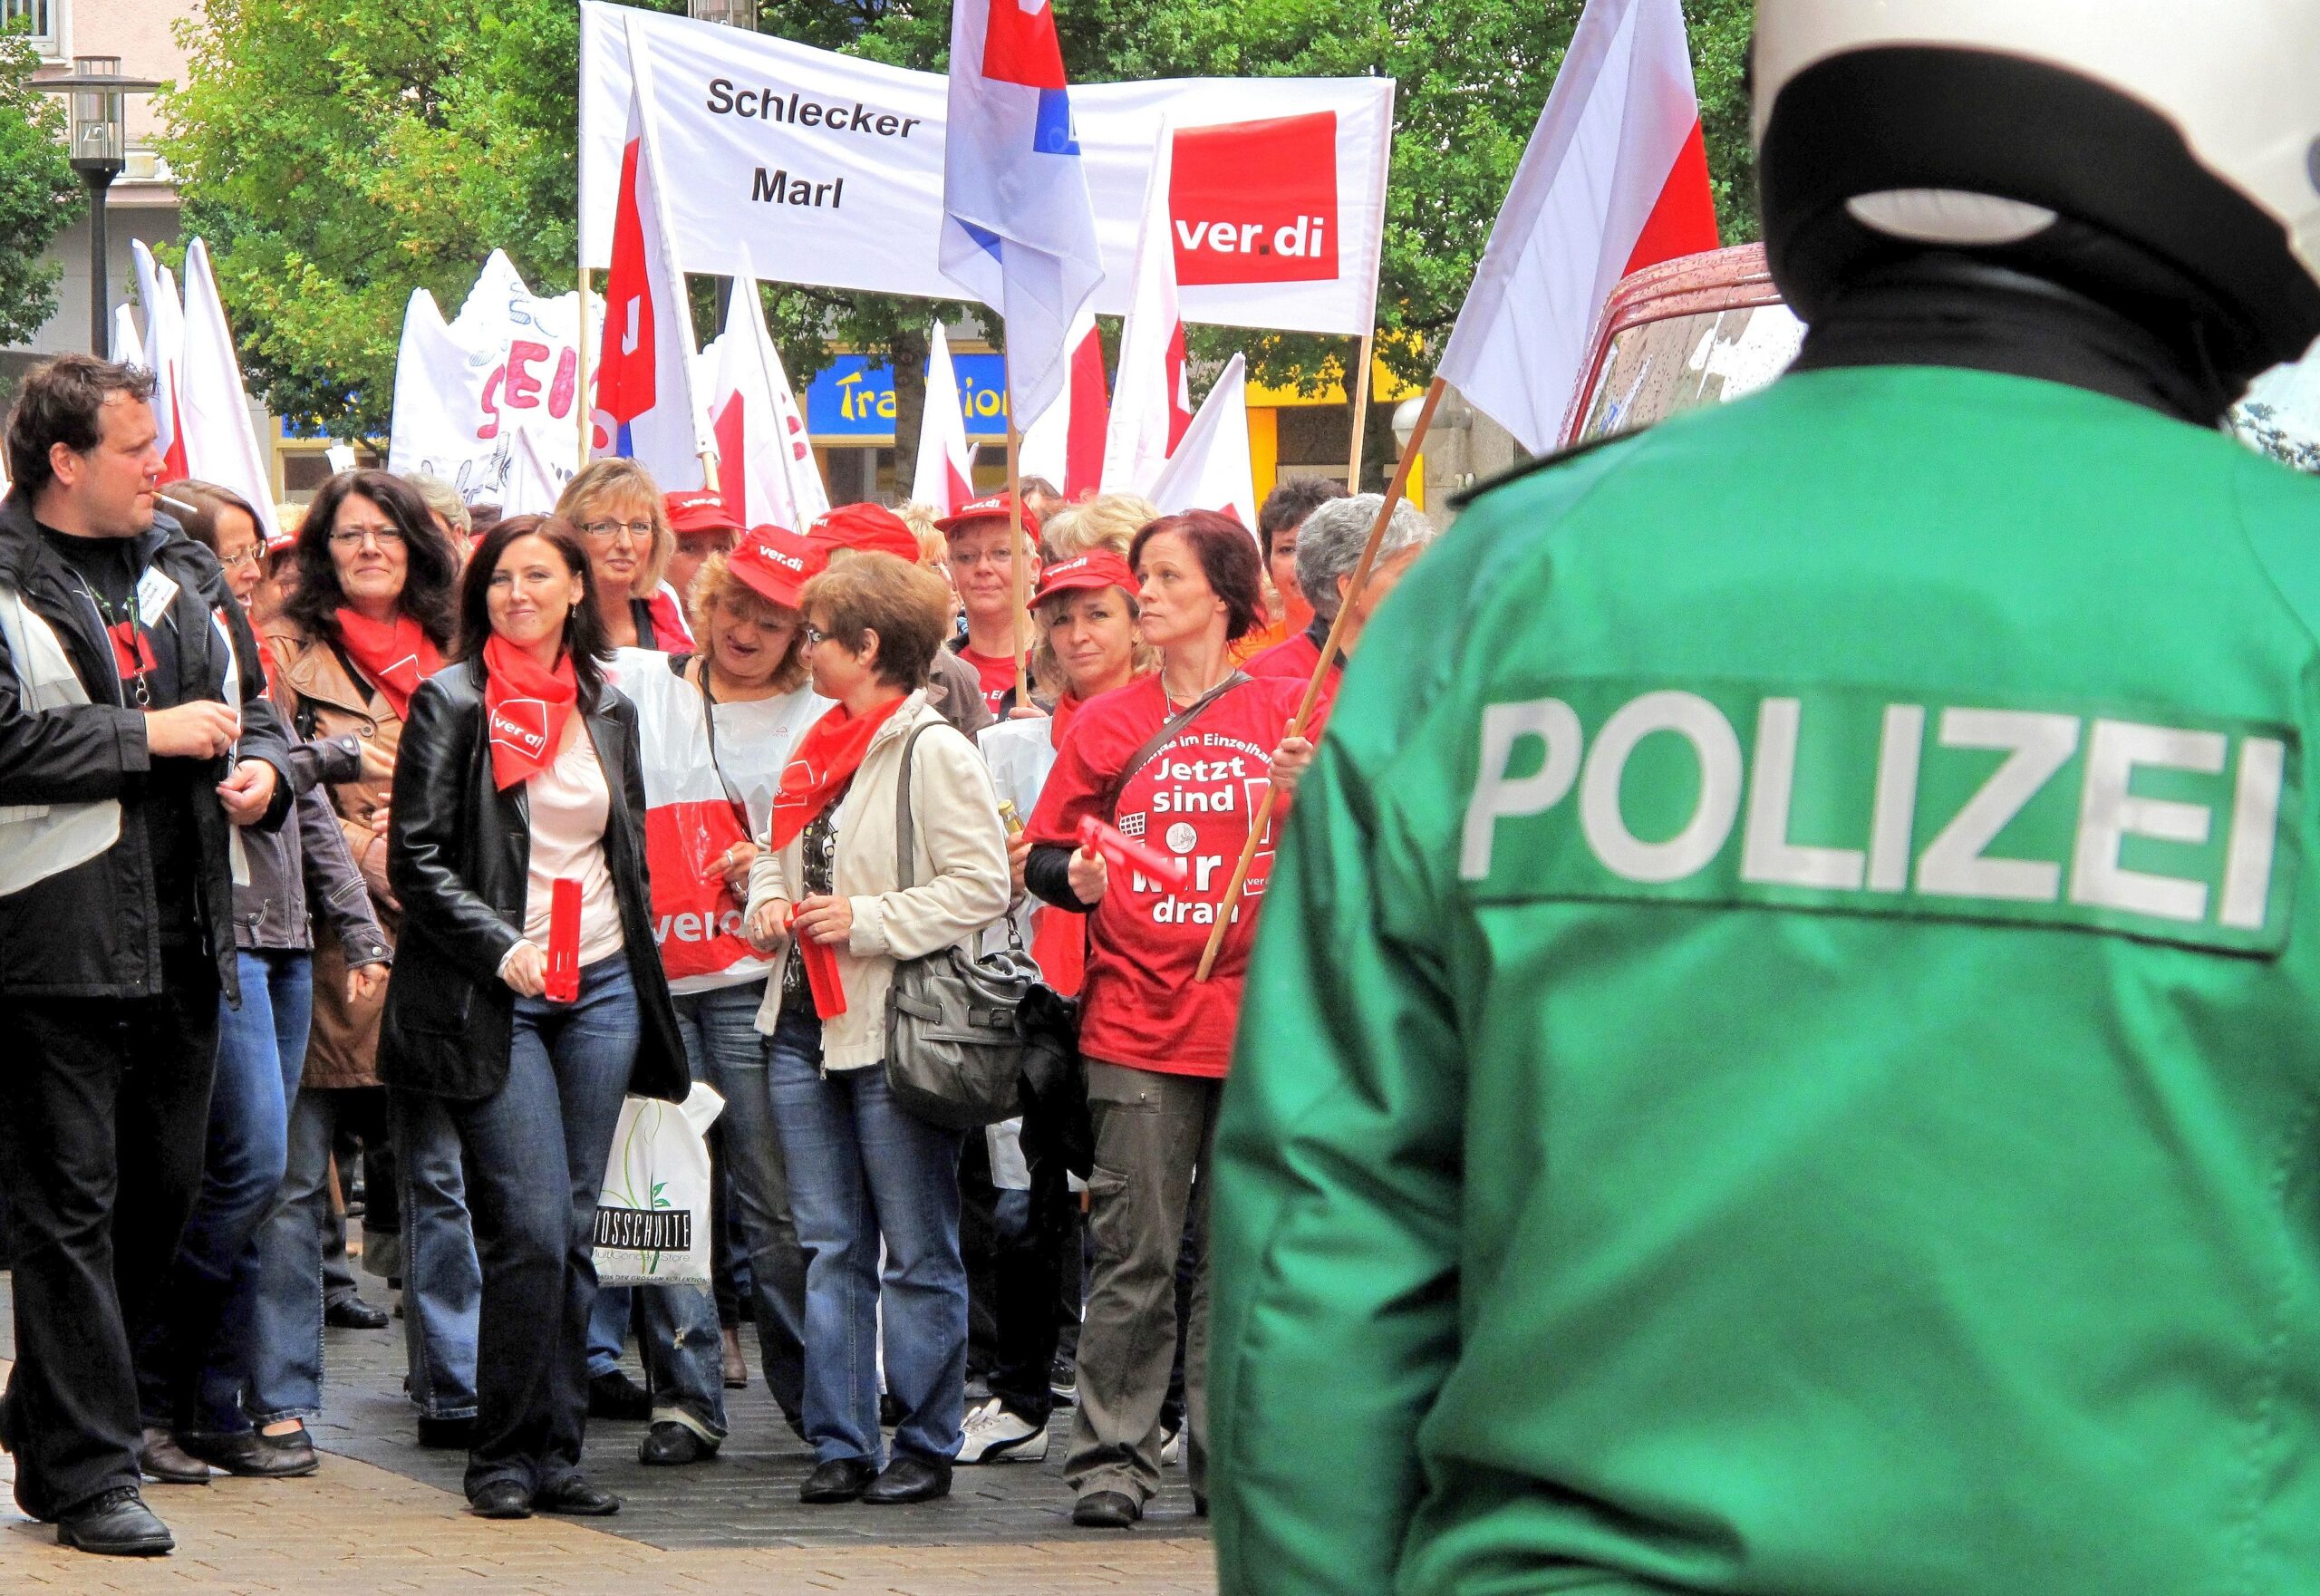 Die Vereinte Dienstleistungsgewerkschaft (ver.di) hatte für Dienstag, 21.06.2011, Beschäftigte der Drogeriemarkt-Kette Schlecker zu einem ganztägigen Streik aufgerufen. Der Demonstrationszug mit ca. 350 Teilnehmern zog vom zentralen Streiklokal an der Handwerkskammer Dortmund durch die  Innenstadt.